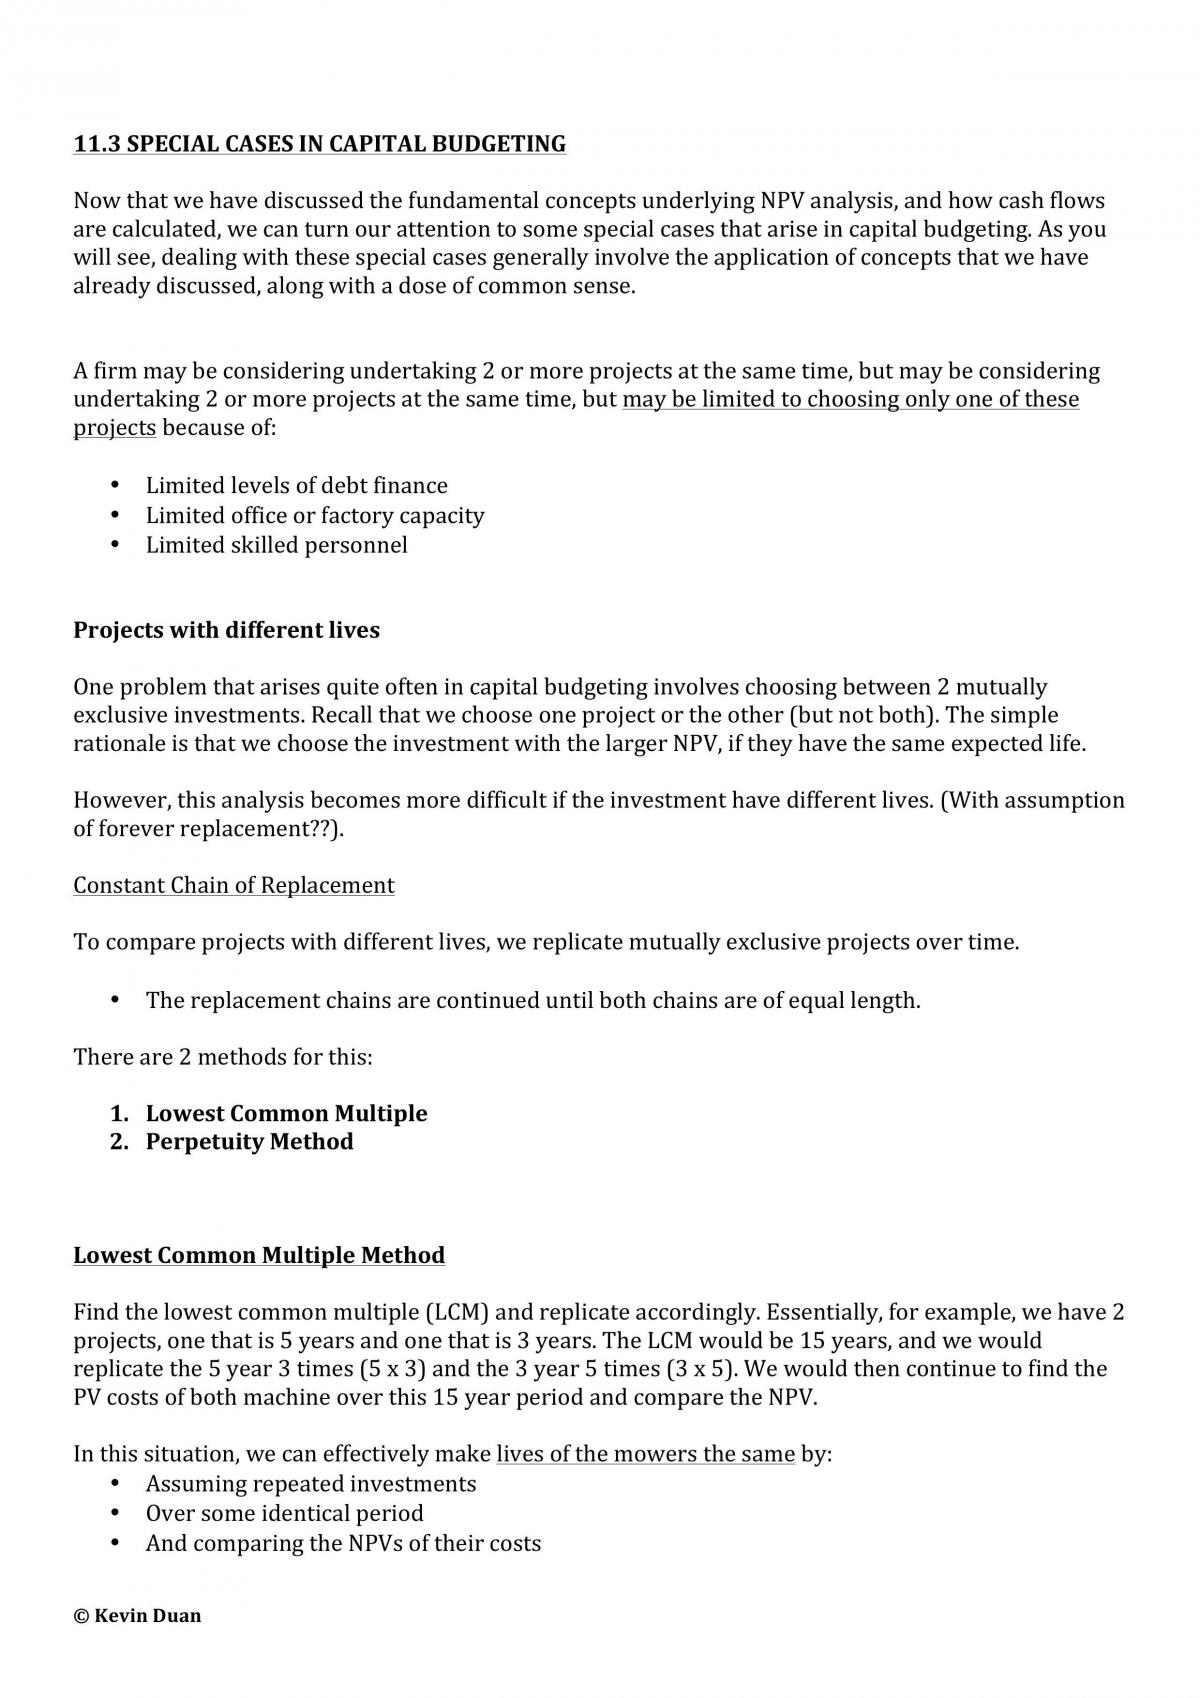 BFC2140 Sem 2, 2014 Study Notes - Page 57